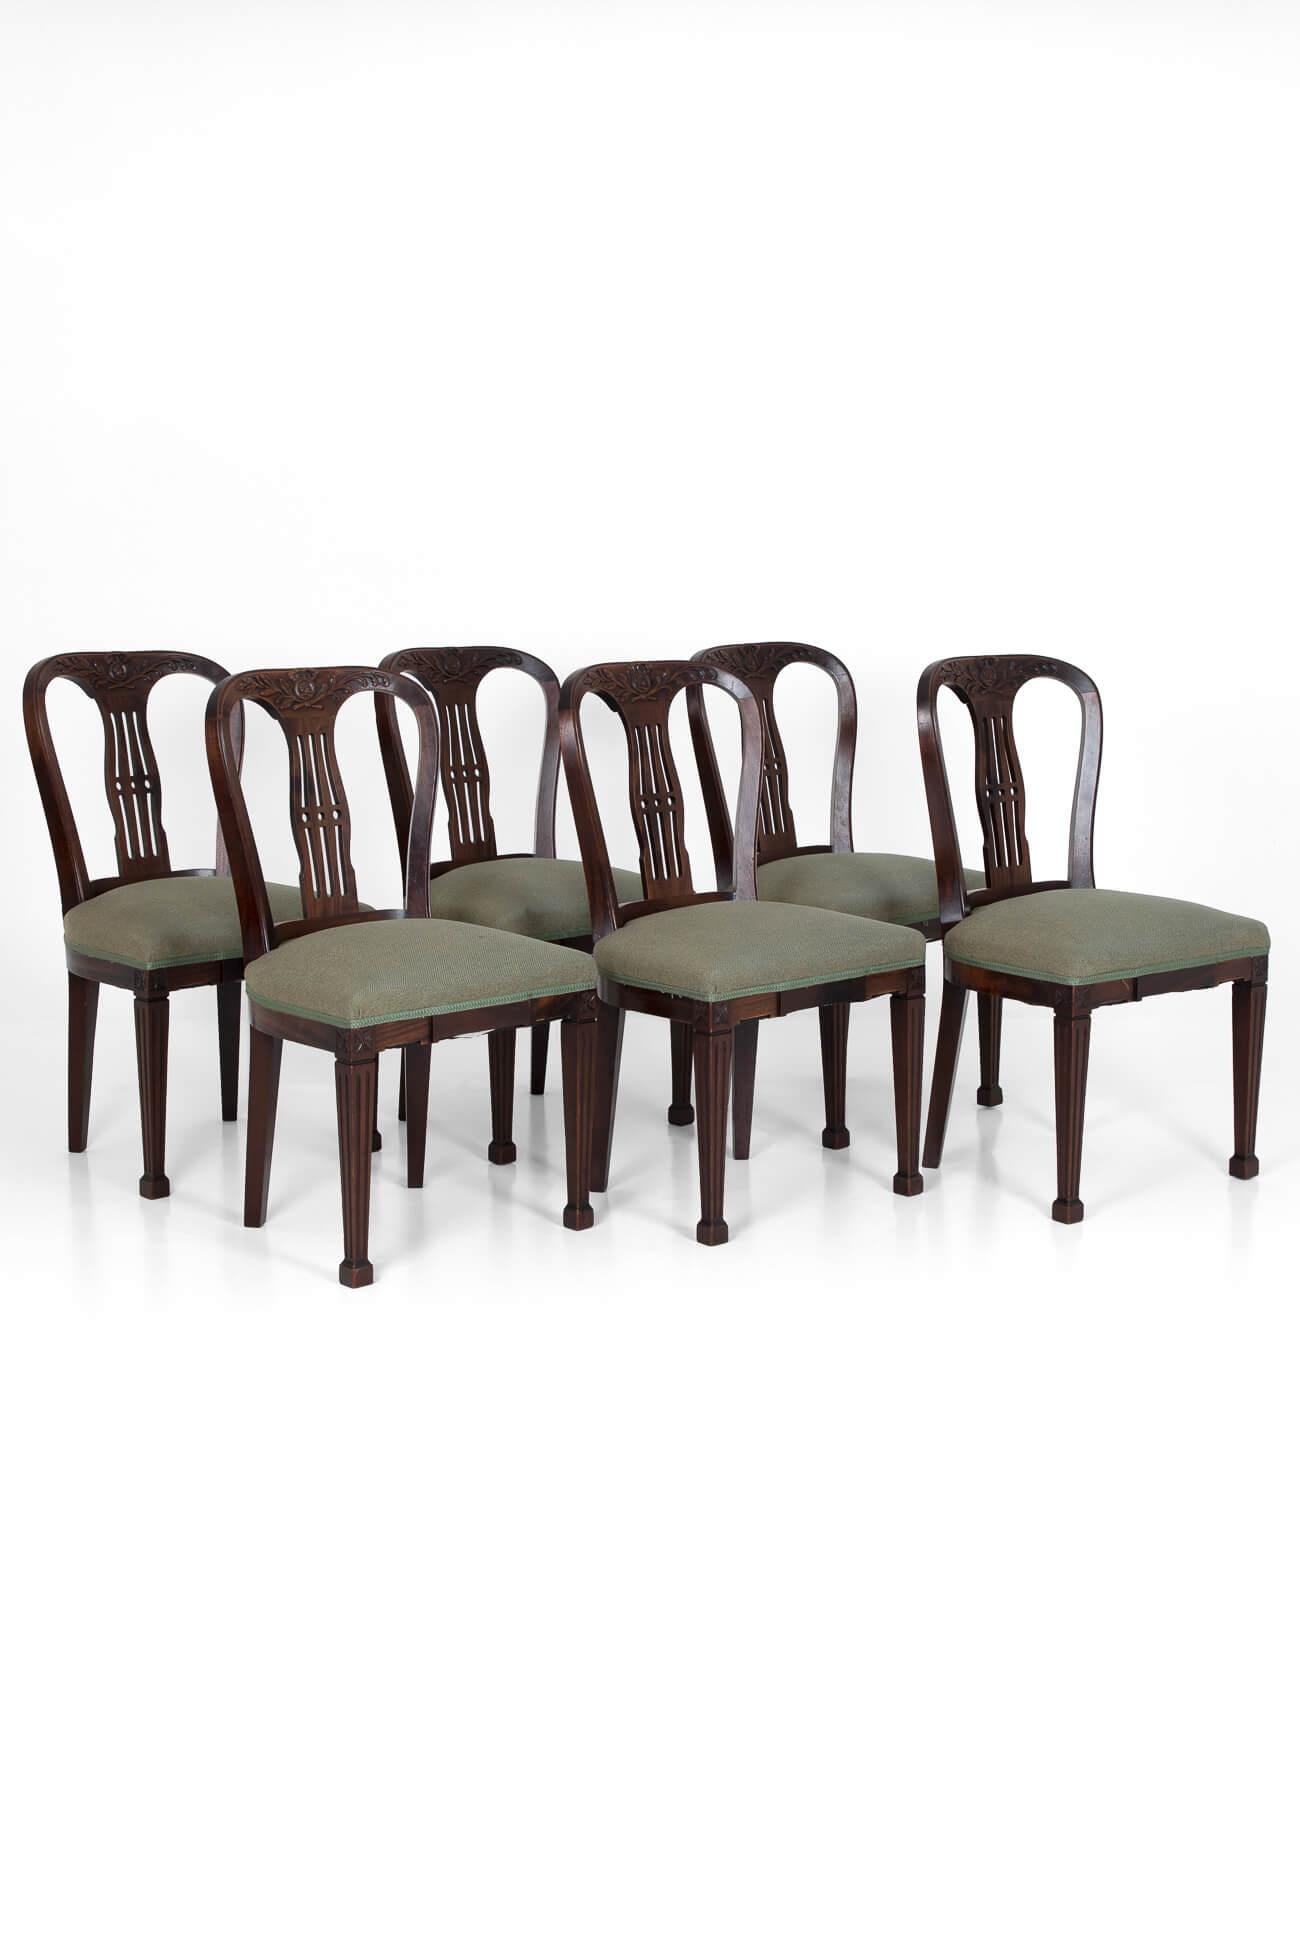 Un ensemble de six chaises de salle à manger en acajou du 19ème siècle provenant d'une maison de campagne anglaise. En état exceptionnel, avec des motifs classiques au-dessus des dos découpés en frettes et des pieds fuselés sur des pieds carrés.